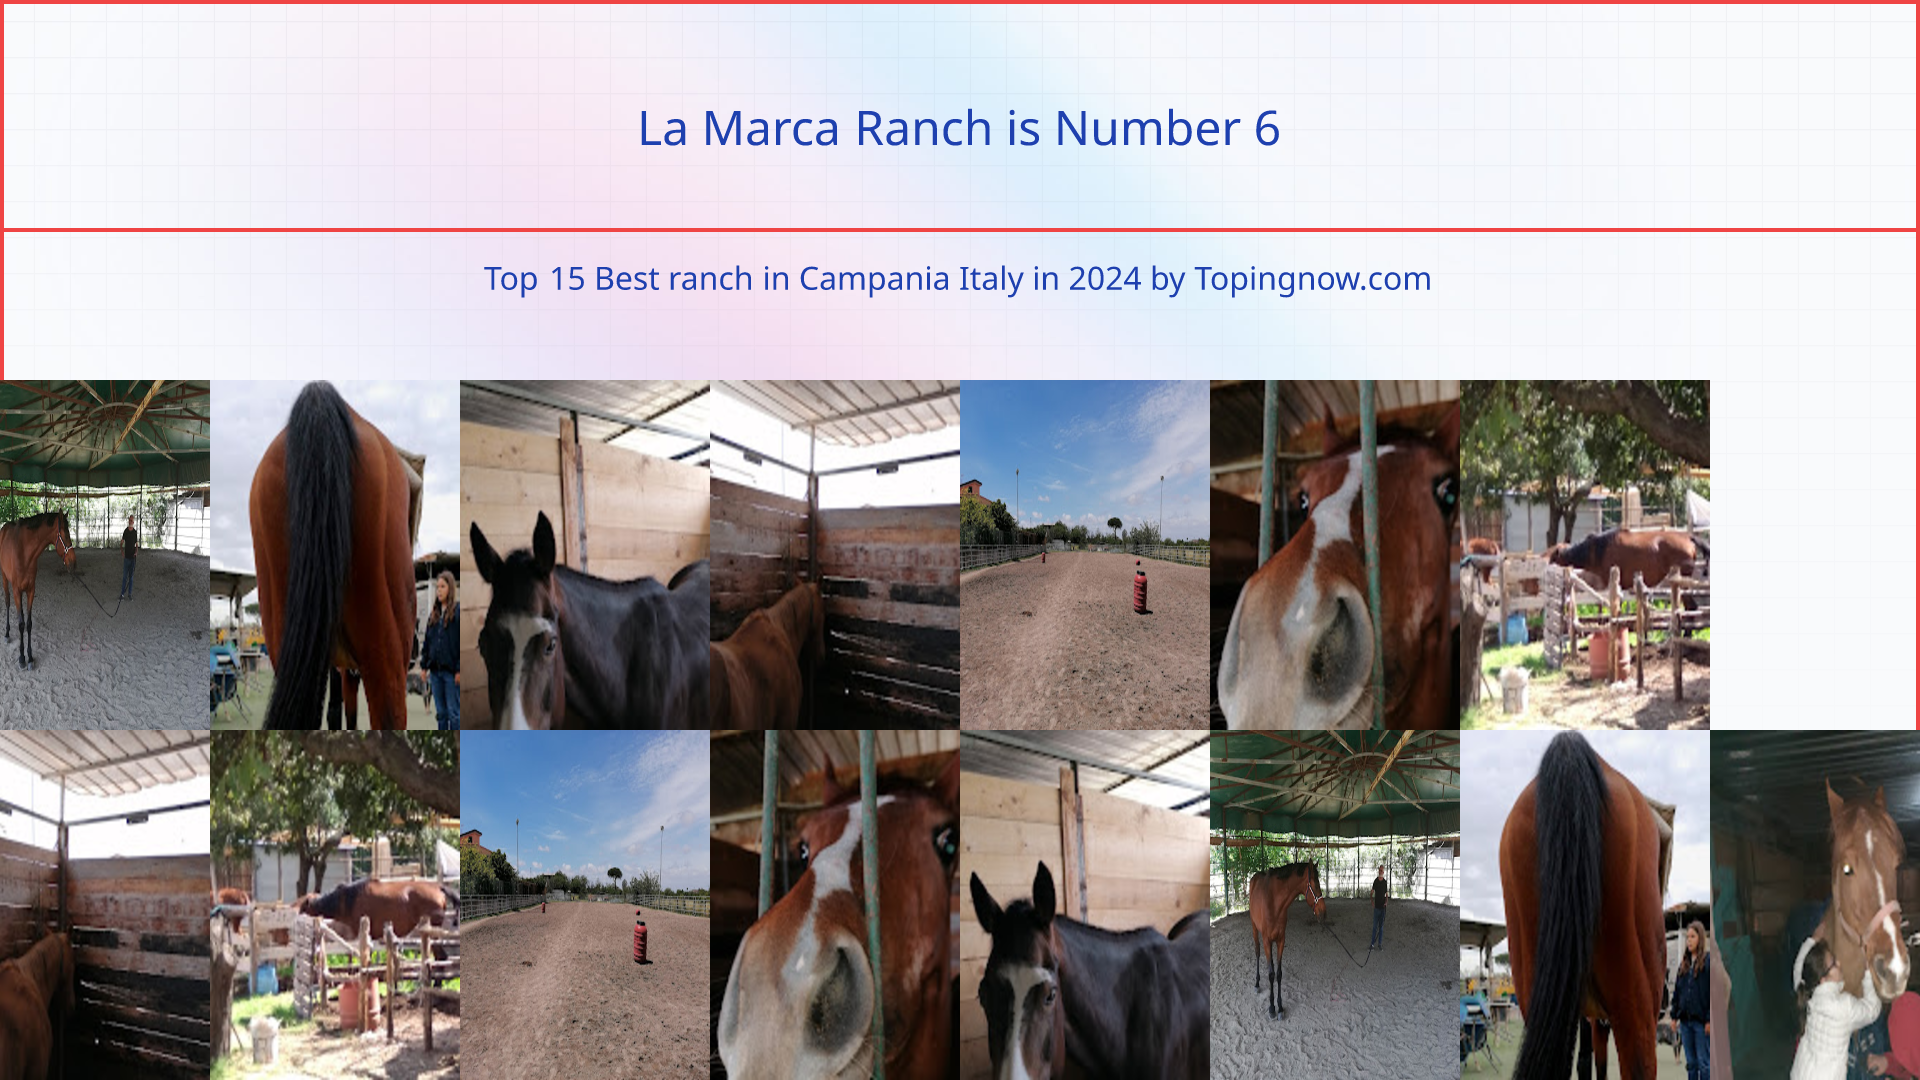 La Marca Ranch: Top 15 Best ranch in Campania Italy in 2024